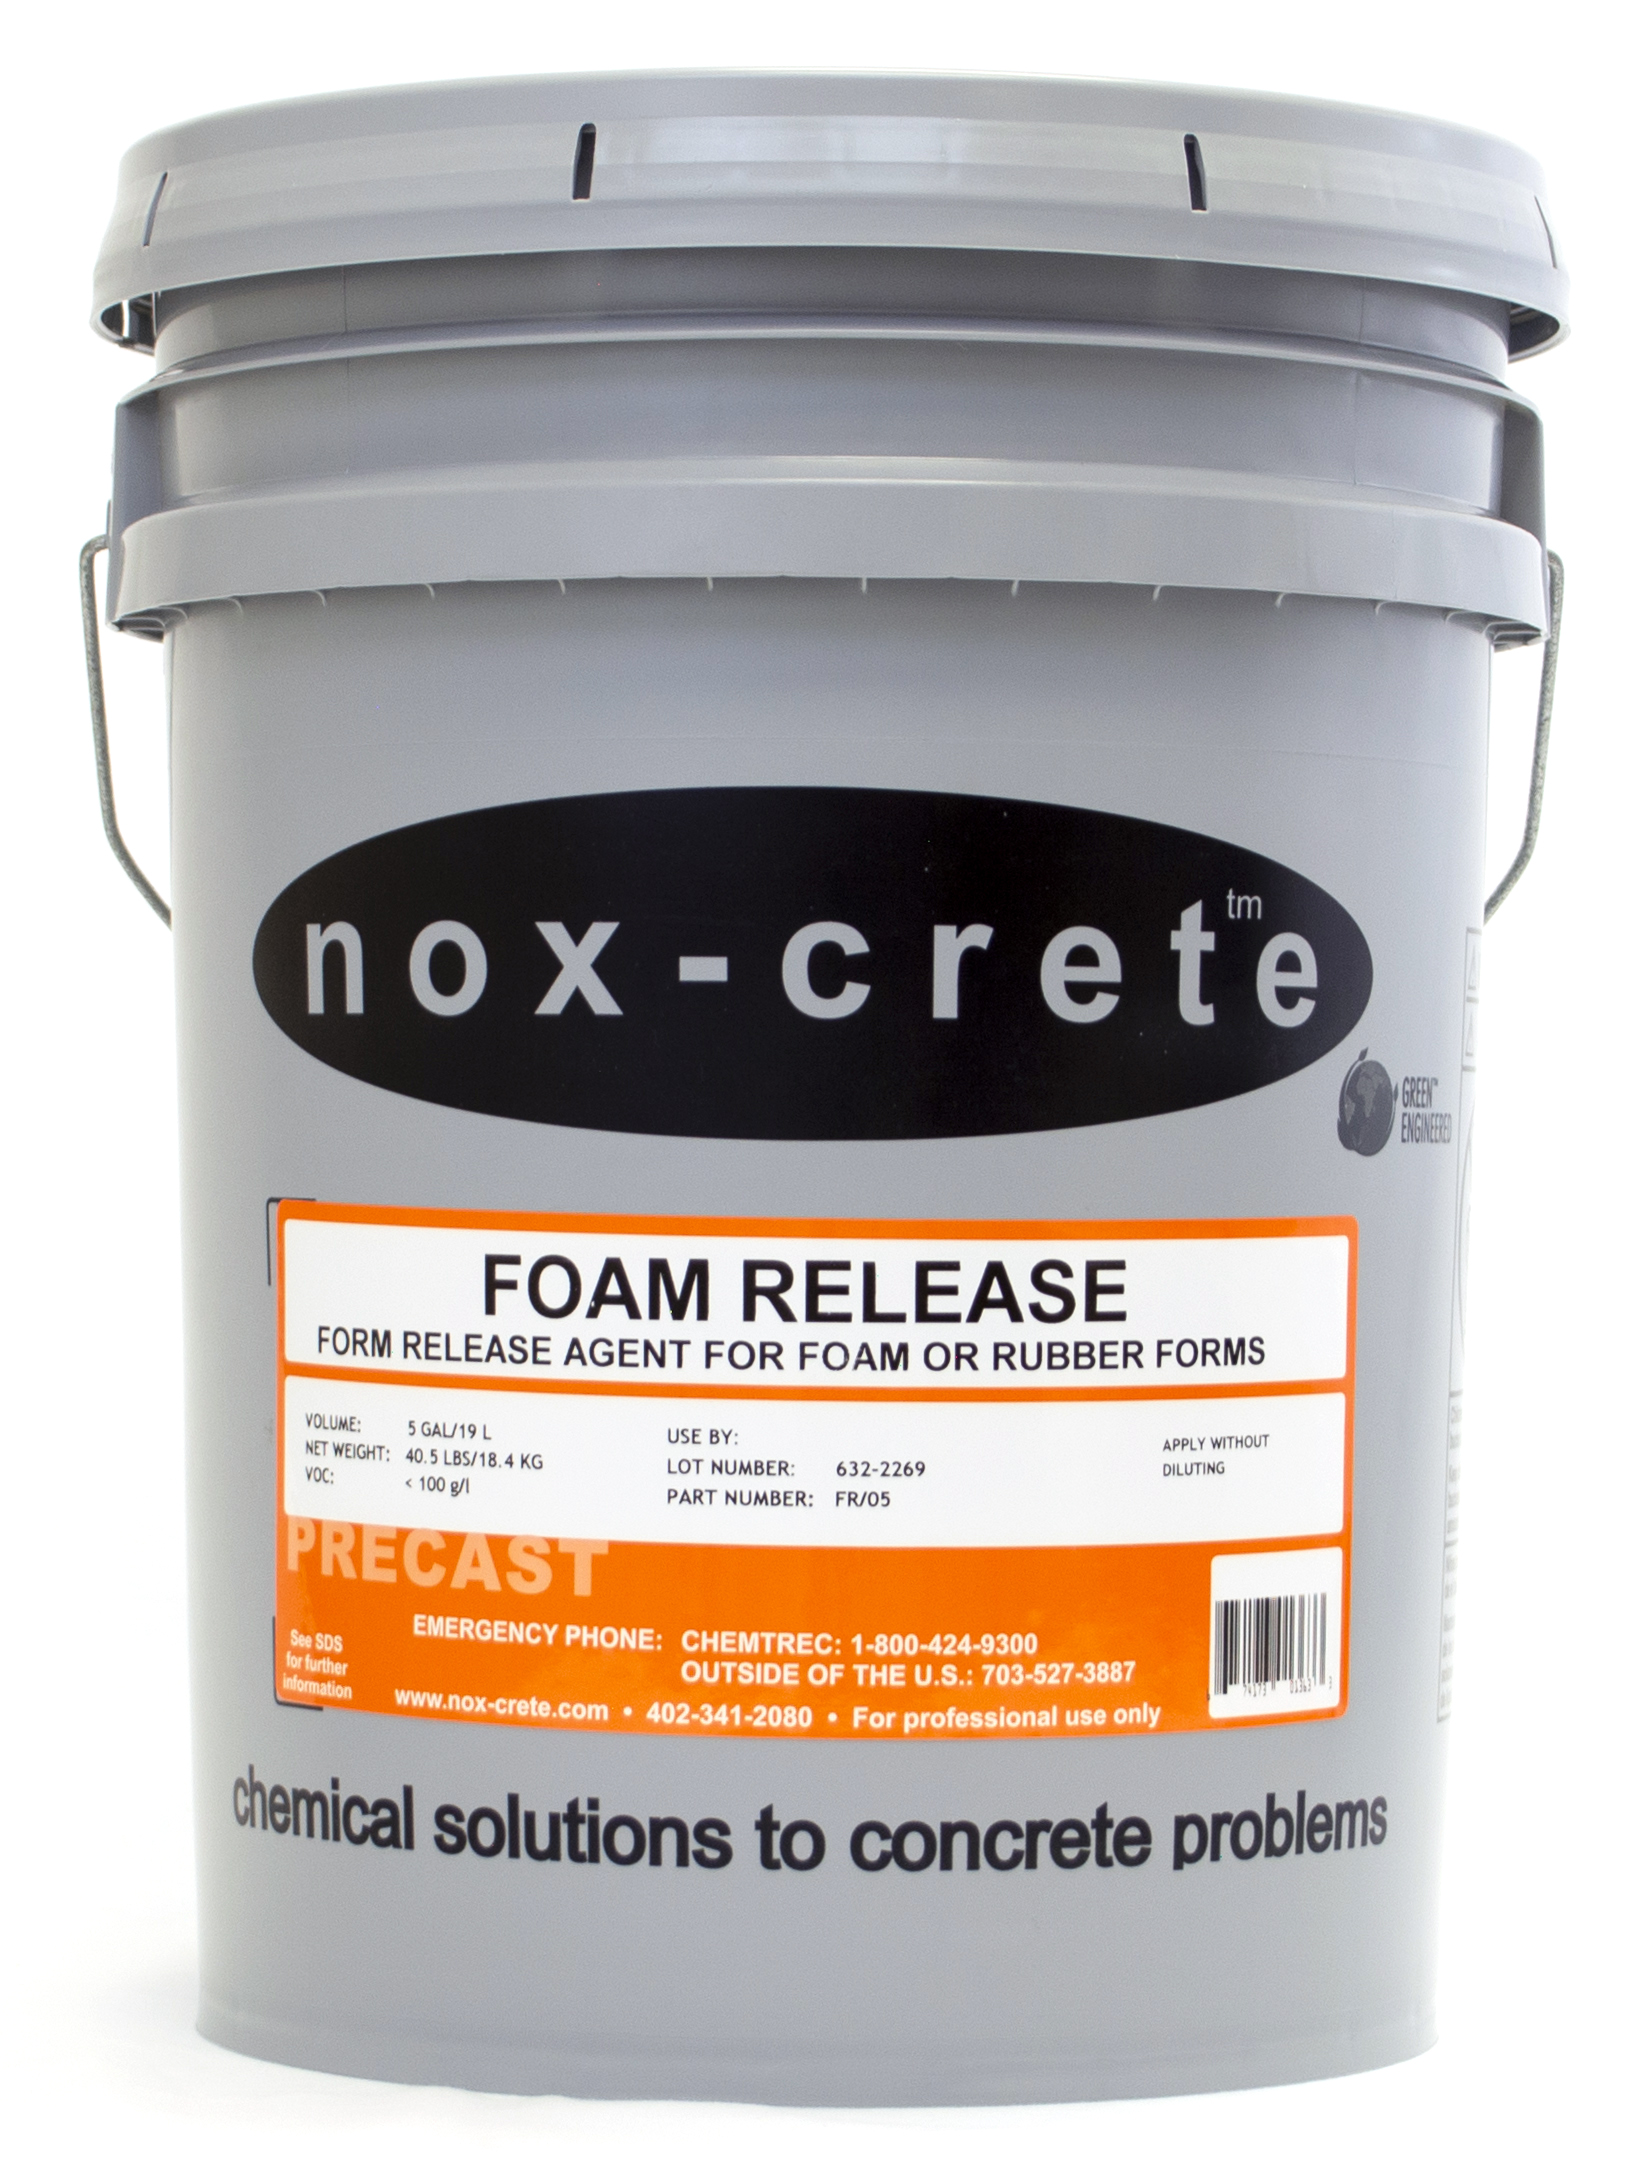 EPS foam form release agent Foam Release by Nox-Crete